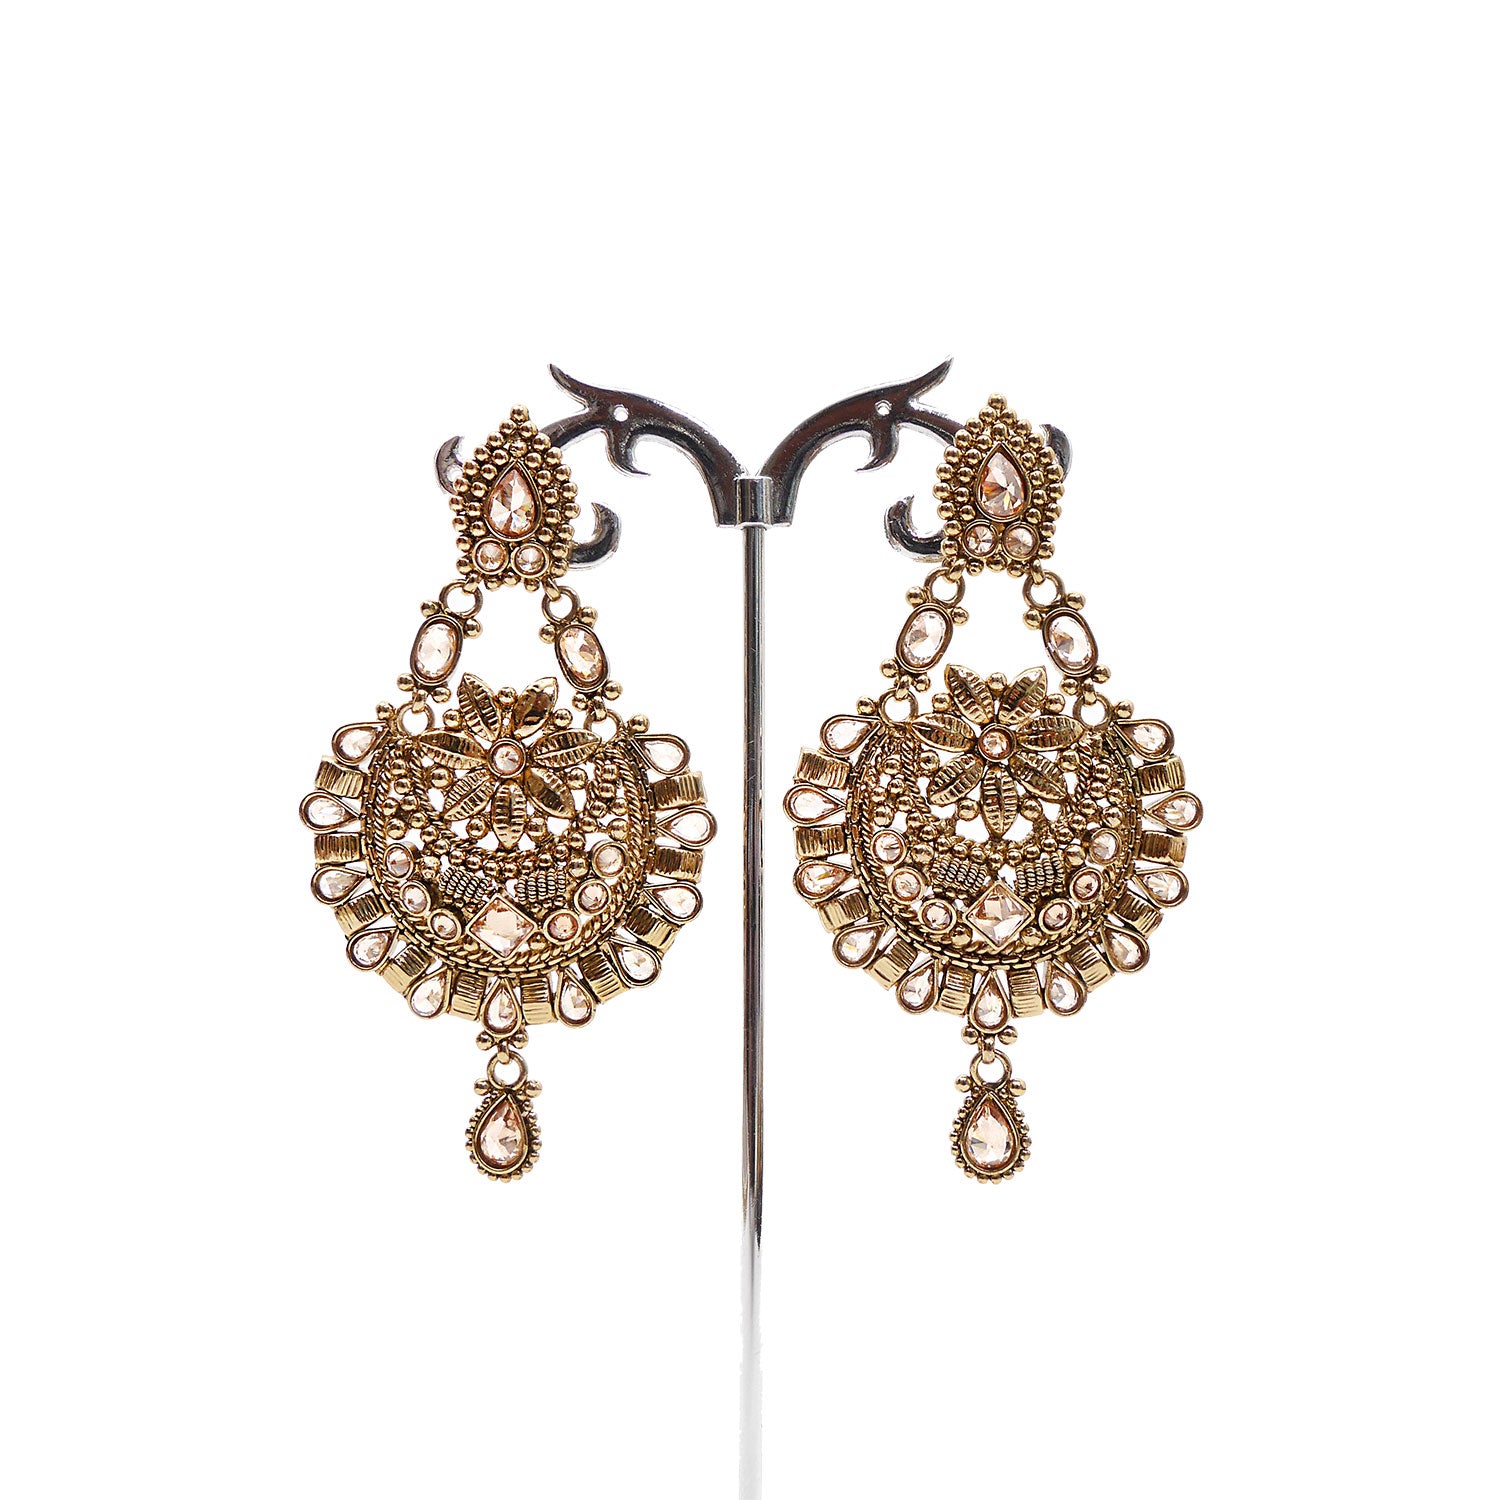 Star Chandbali Earrings in Antique Gold